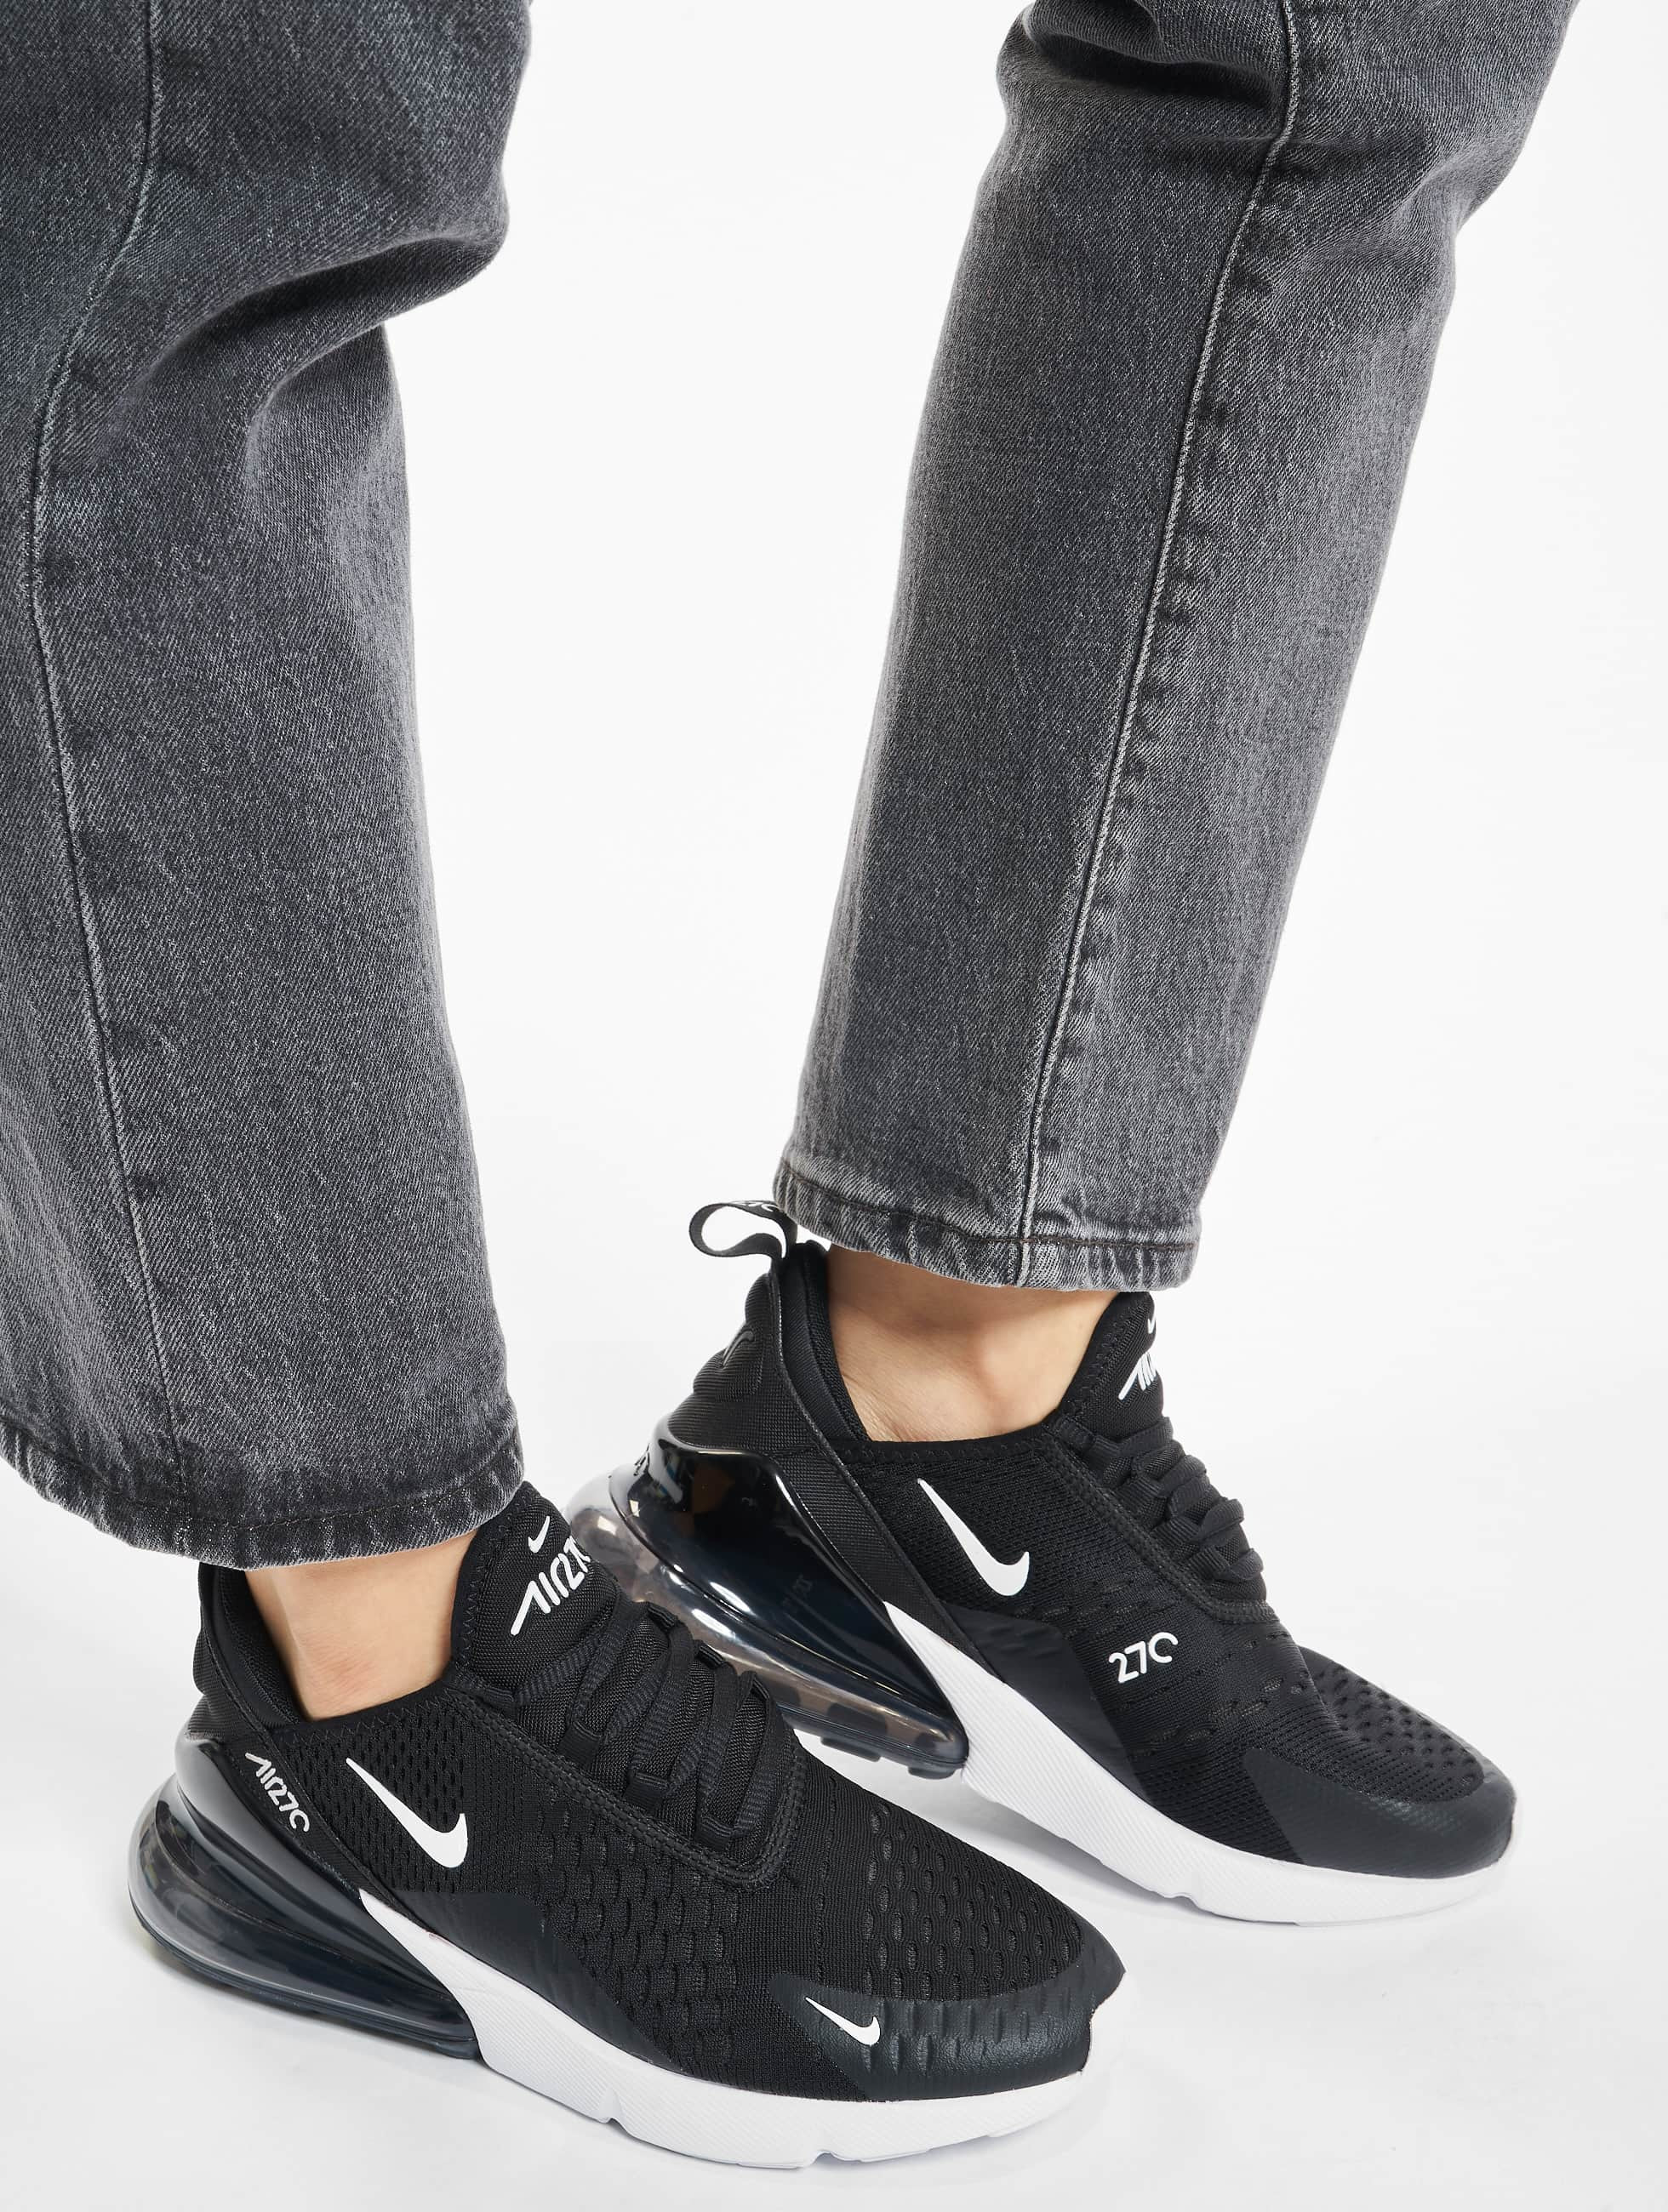 Ontoegankelijk Blanco voorwoord Nike schoen / sneaker Air Max 270 in zwart 443490